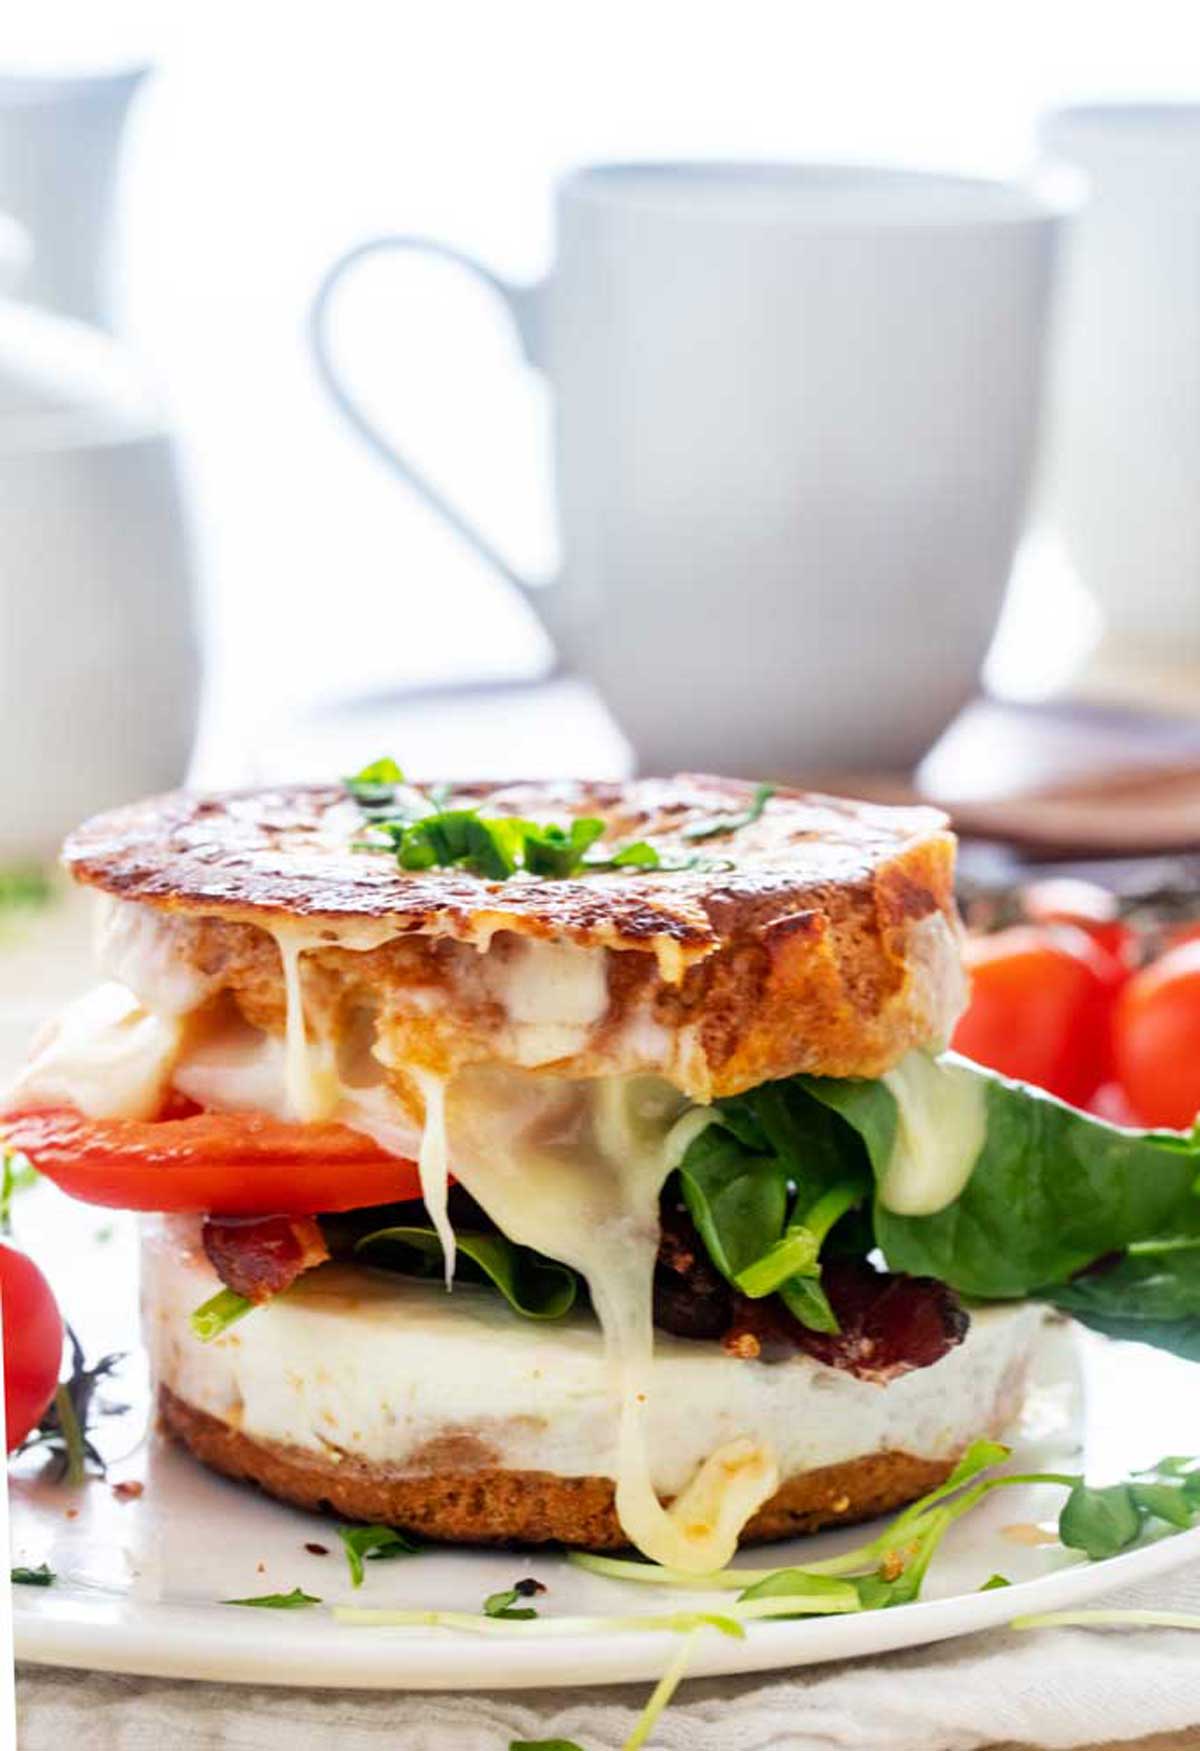 Side photo of a gluten free breakfast sandwich on a white plate.